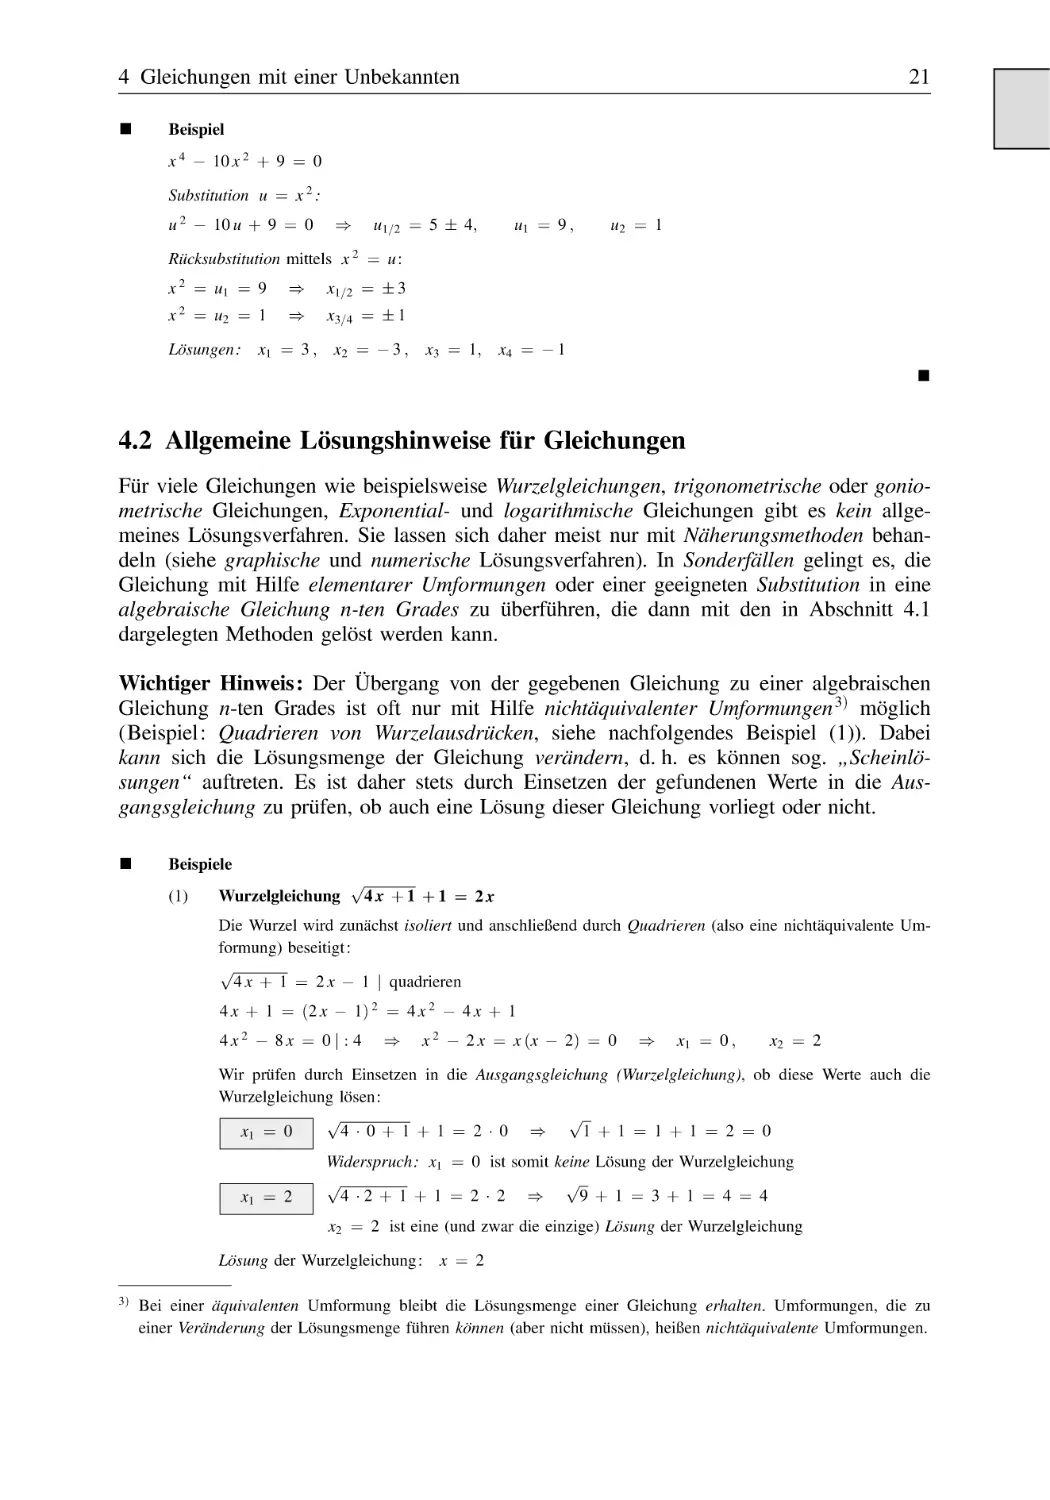 4.2 Allgemeine Lösungshinweise für Gleichungen